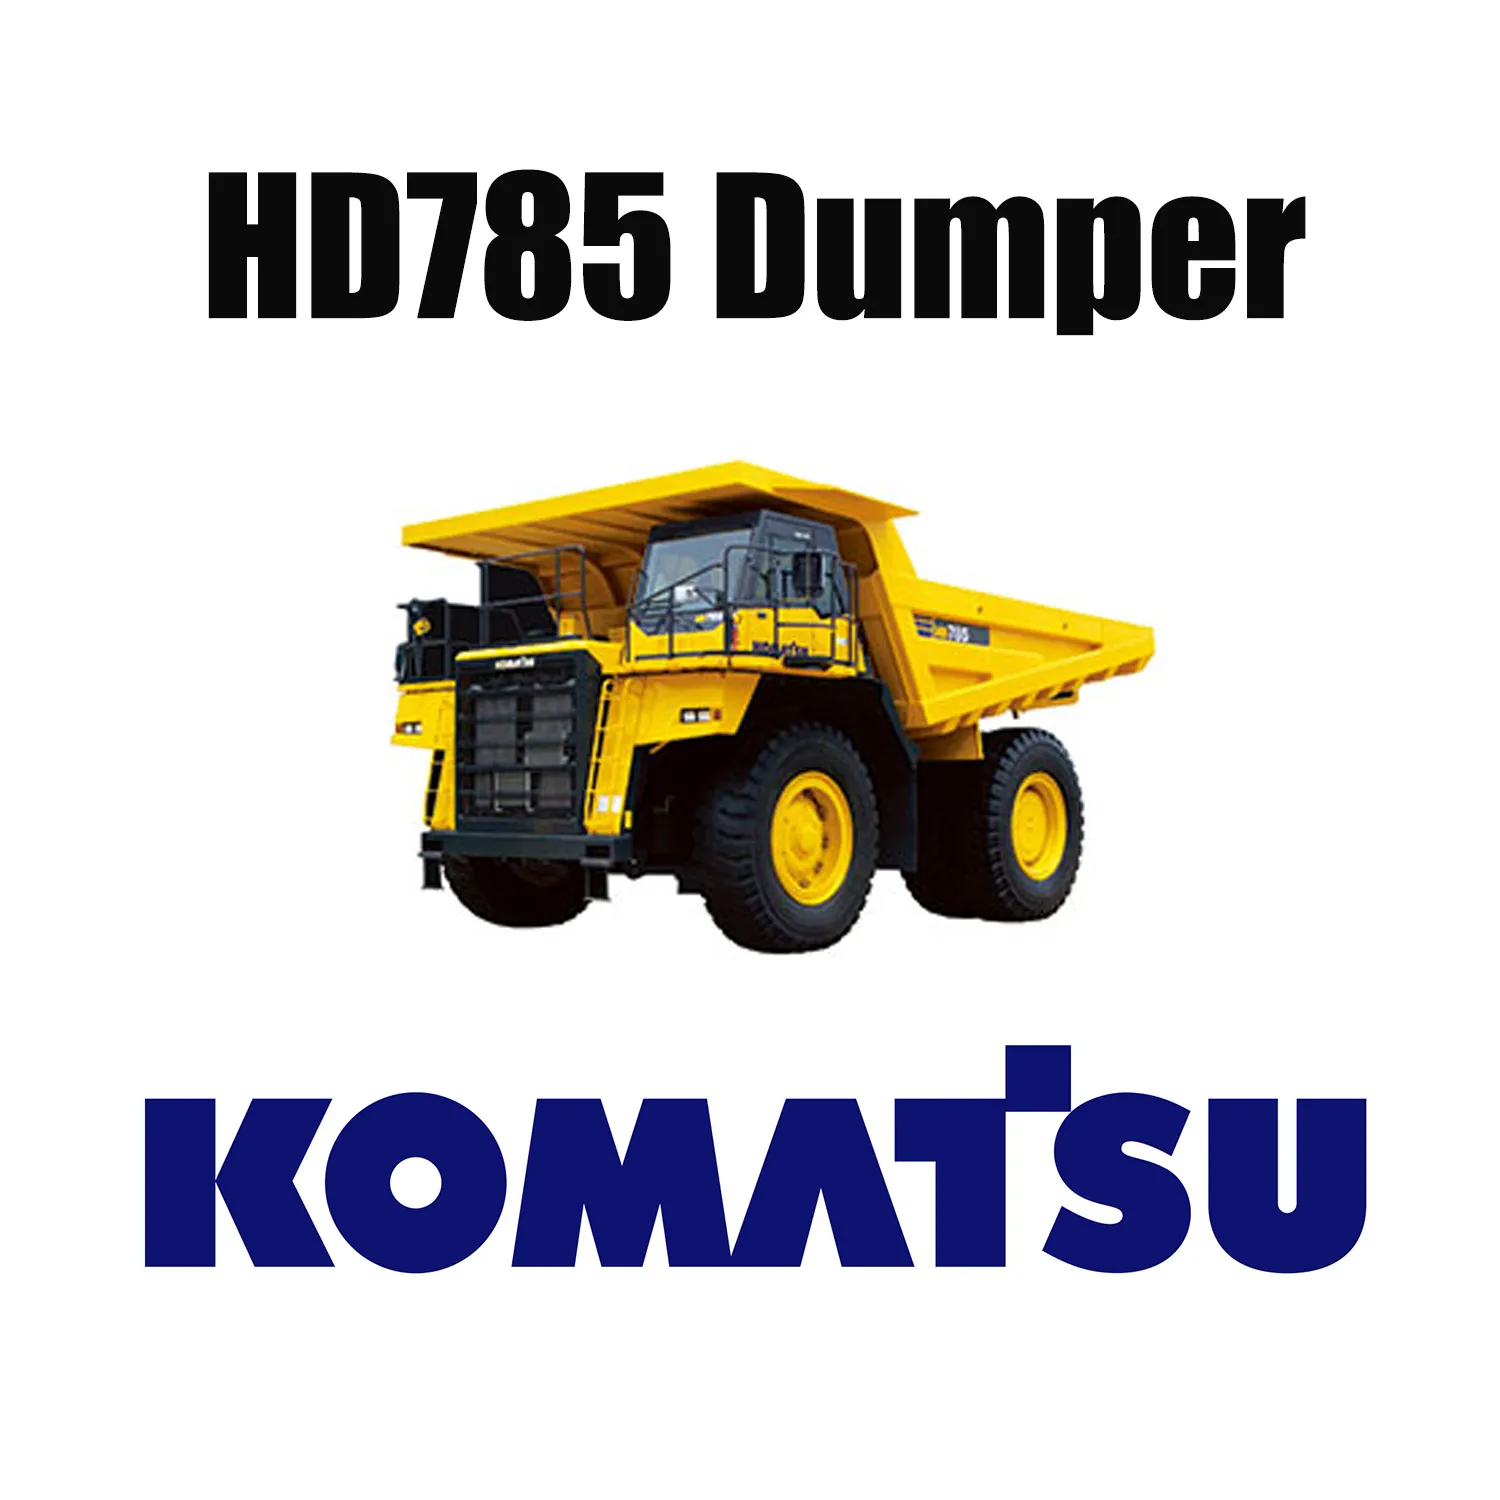 Taaie mijnbouwspecialiteit OTR-banden 27.00R49 voor dumptruck KOMATSU HD785